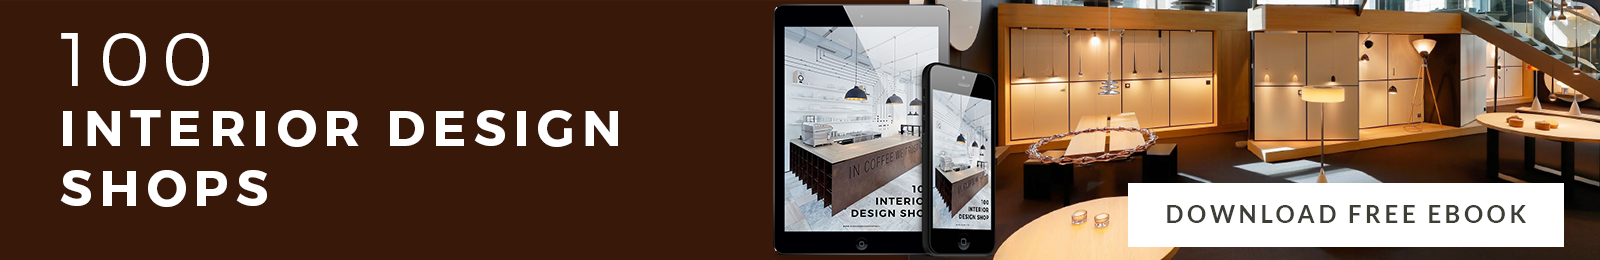 Design Guide Miami's Ultimate Design Guide For 2018! 100 interior design shops blog interior design shops